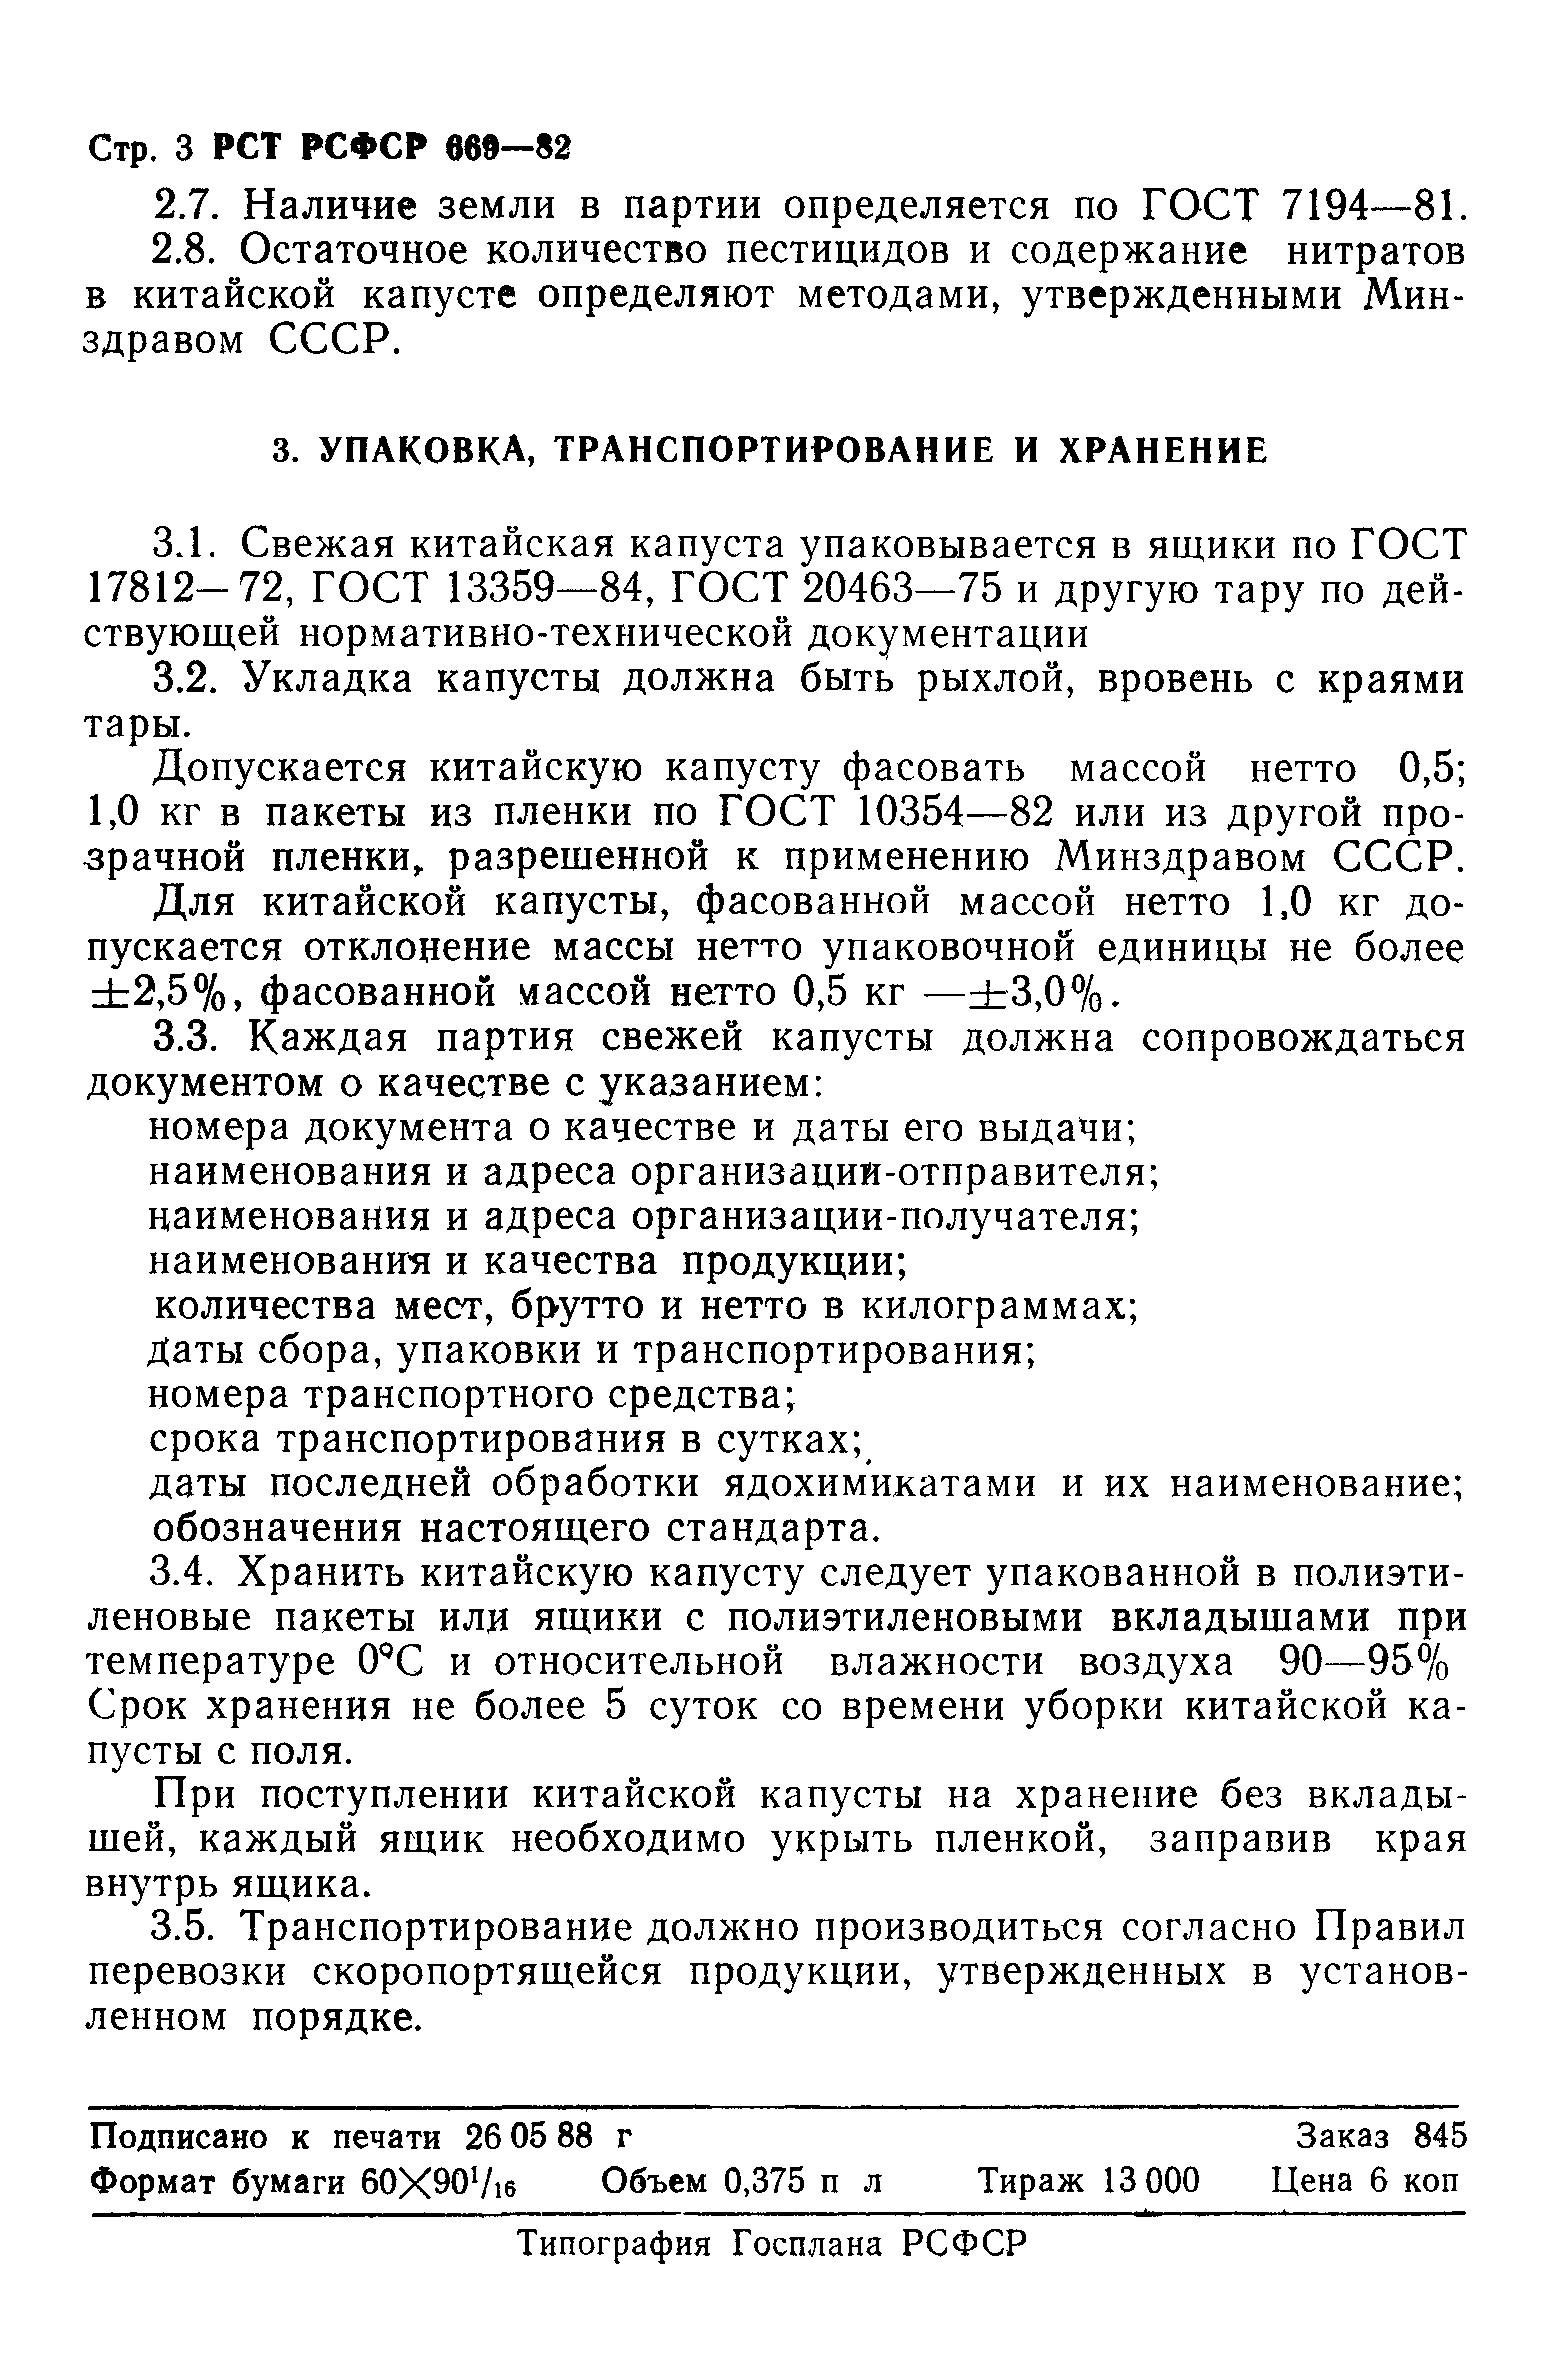 РСТ РСФСР 669-82